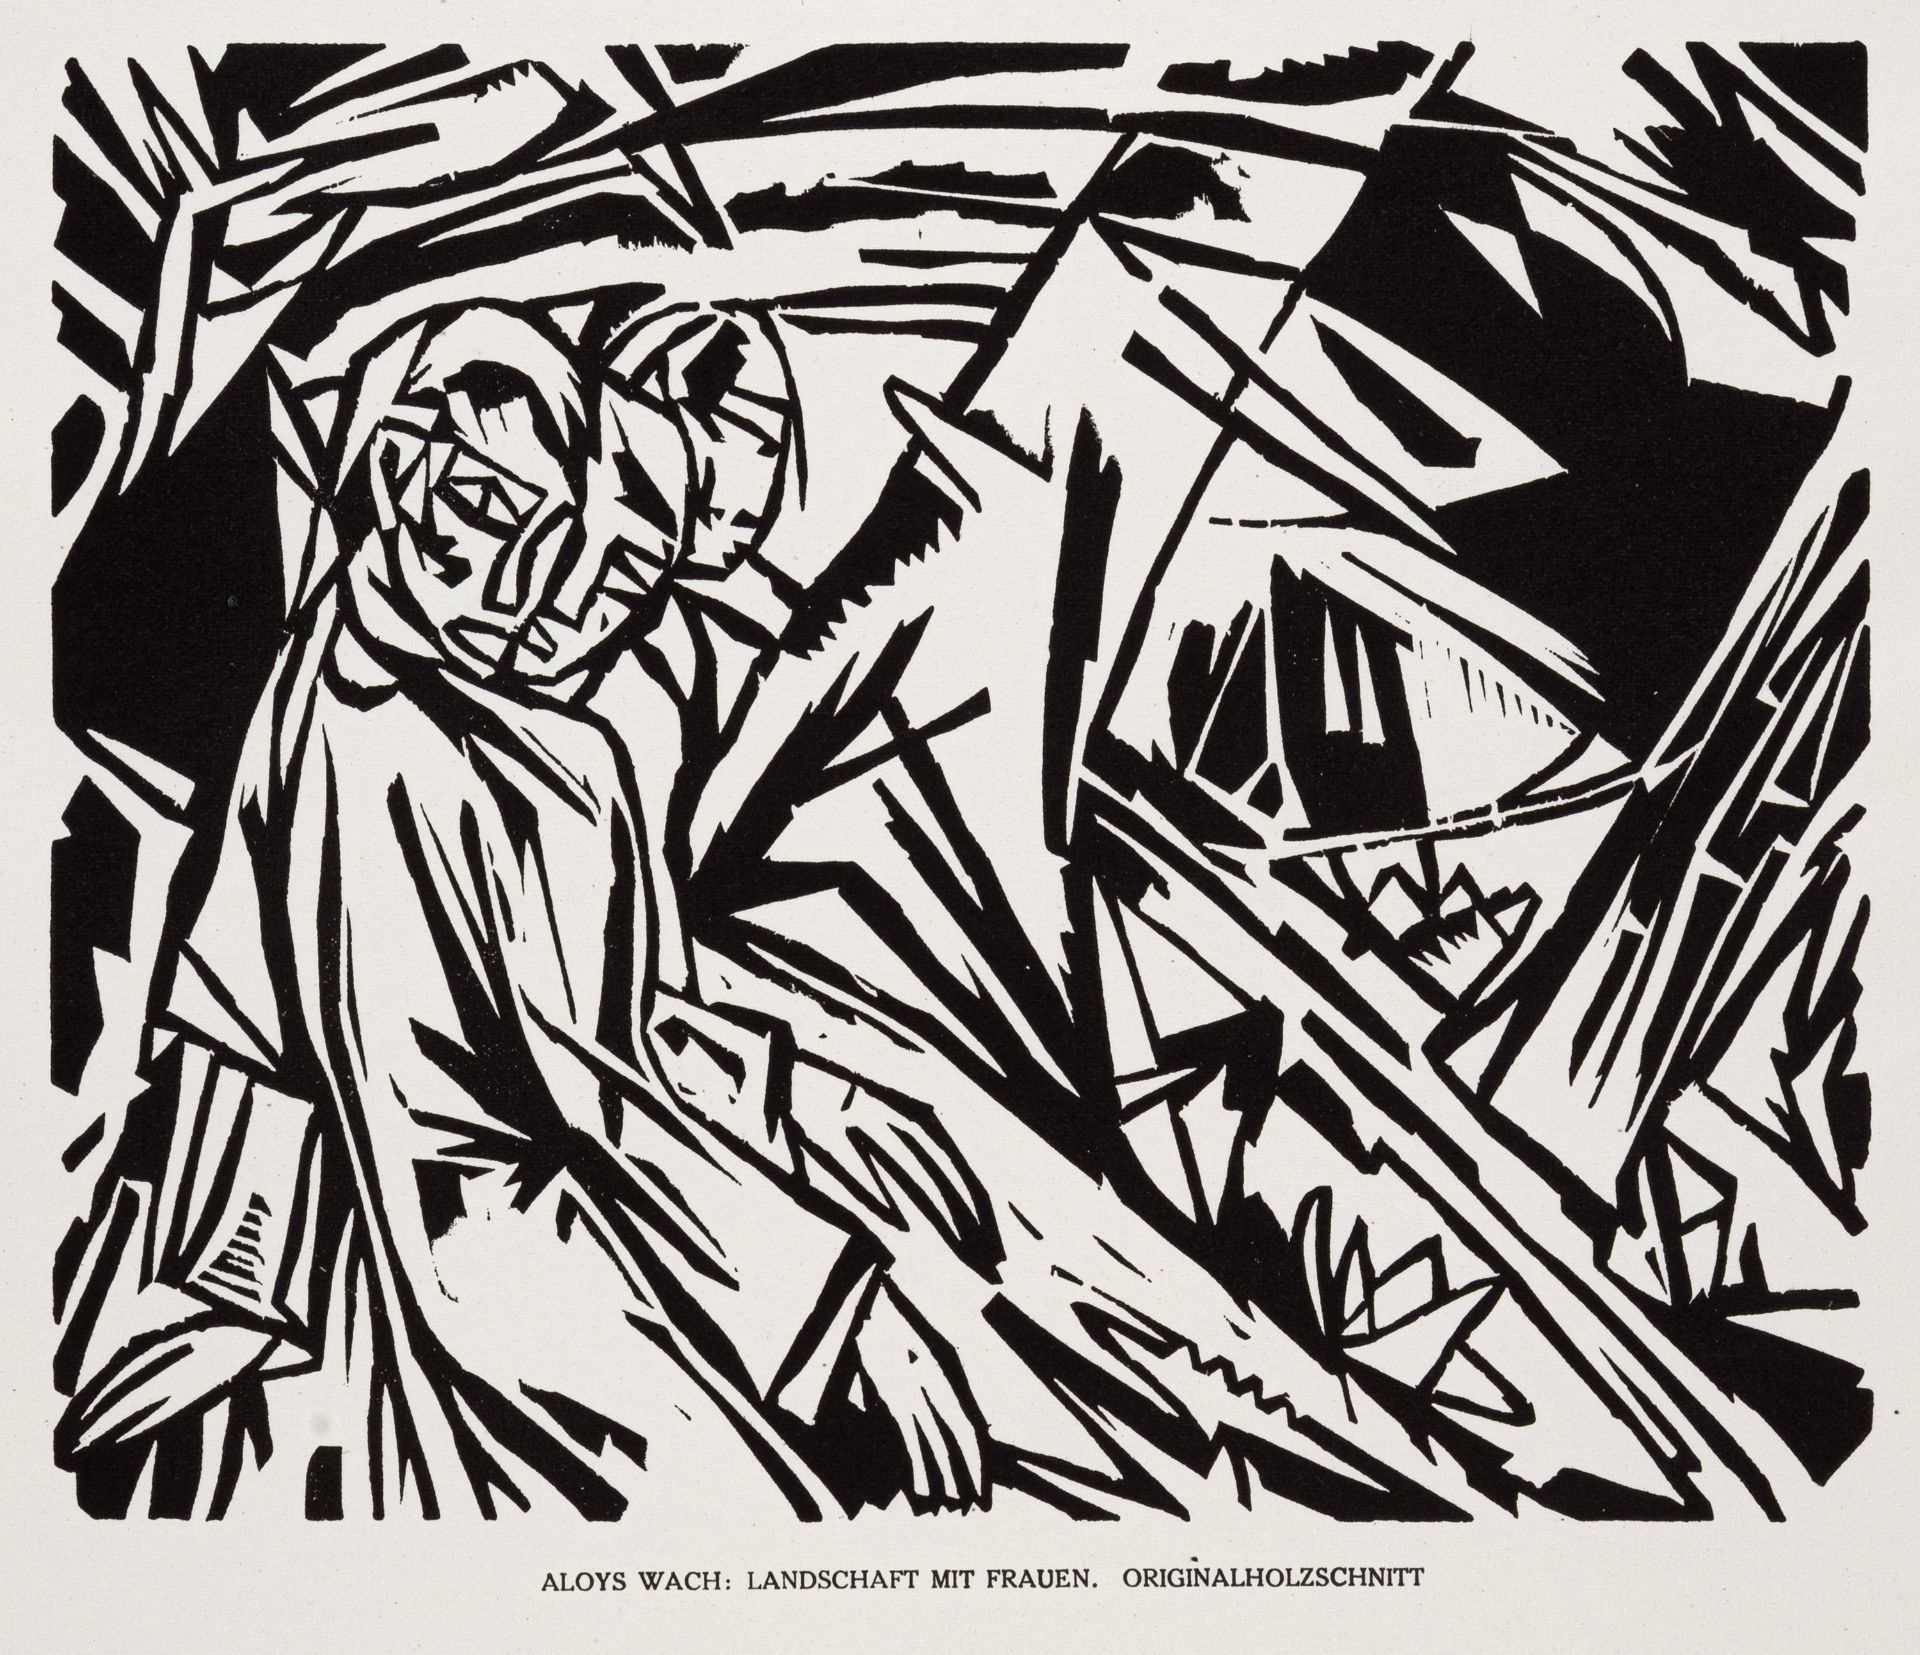 Christian Rohlfs "Elias in der Wüste" / Aloys Wach "Landschaft mit Frauen". 1919. - Image 2 of 2